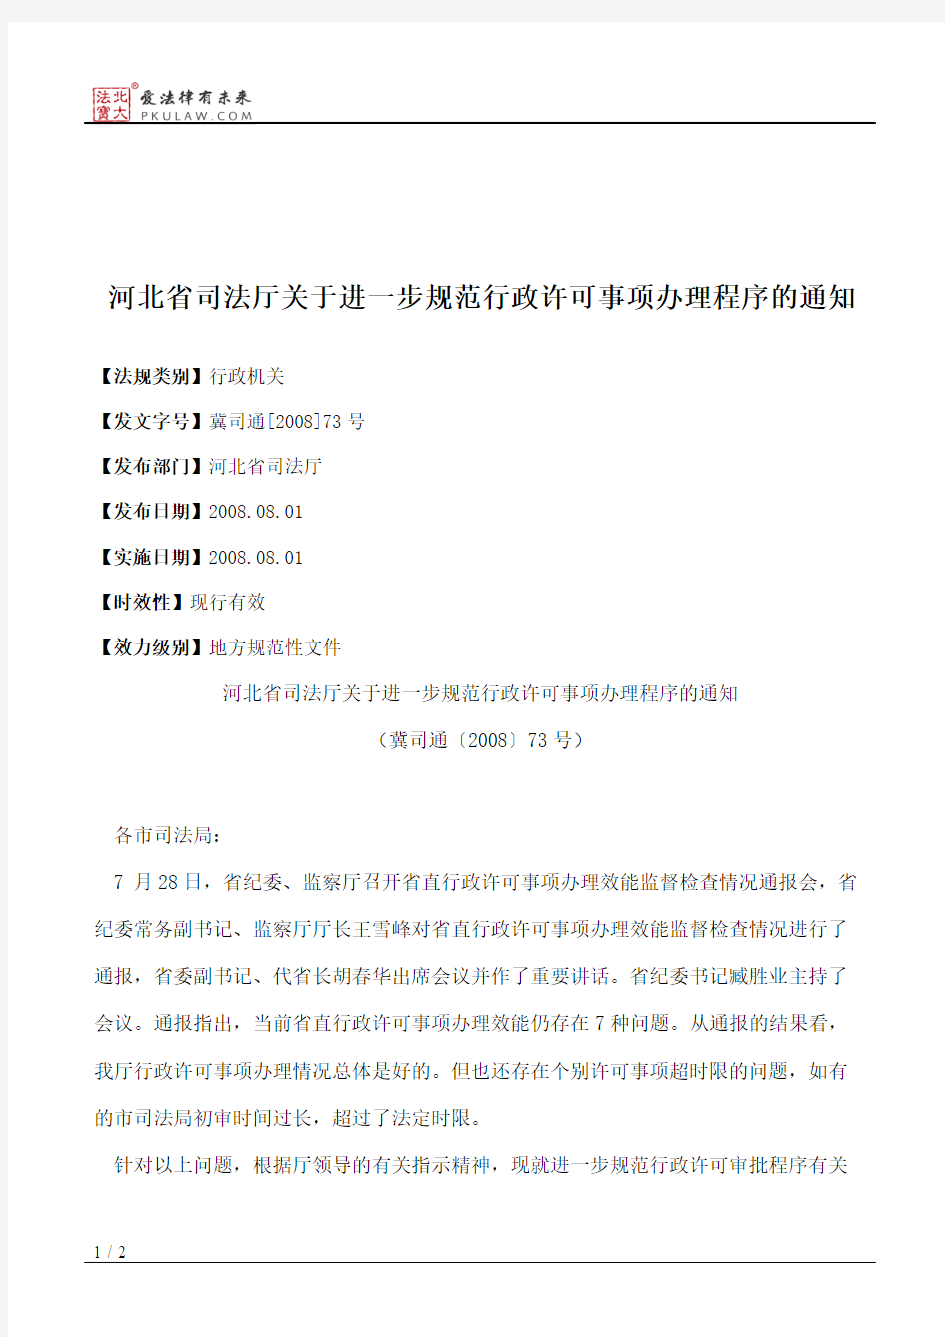 河北省司法厅关于进一步规范行政许可事项办理程序的通知